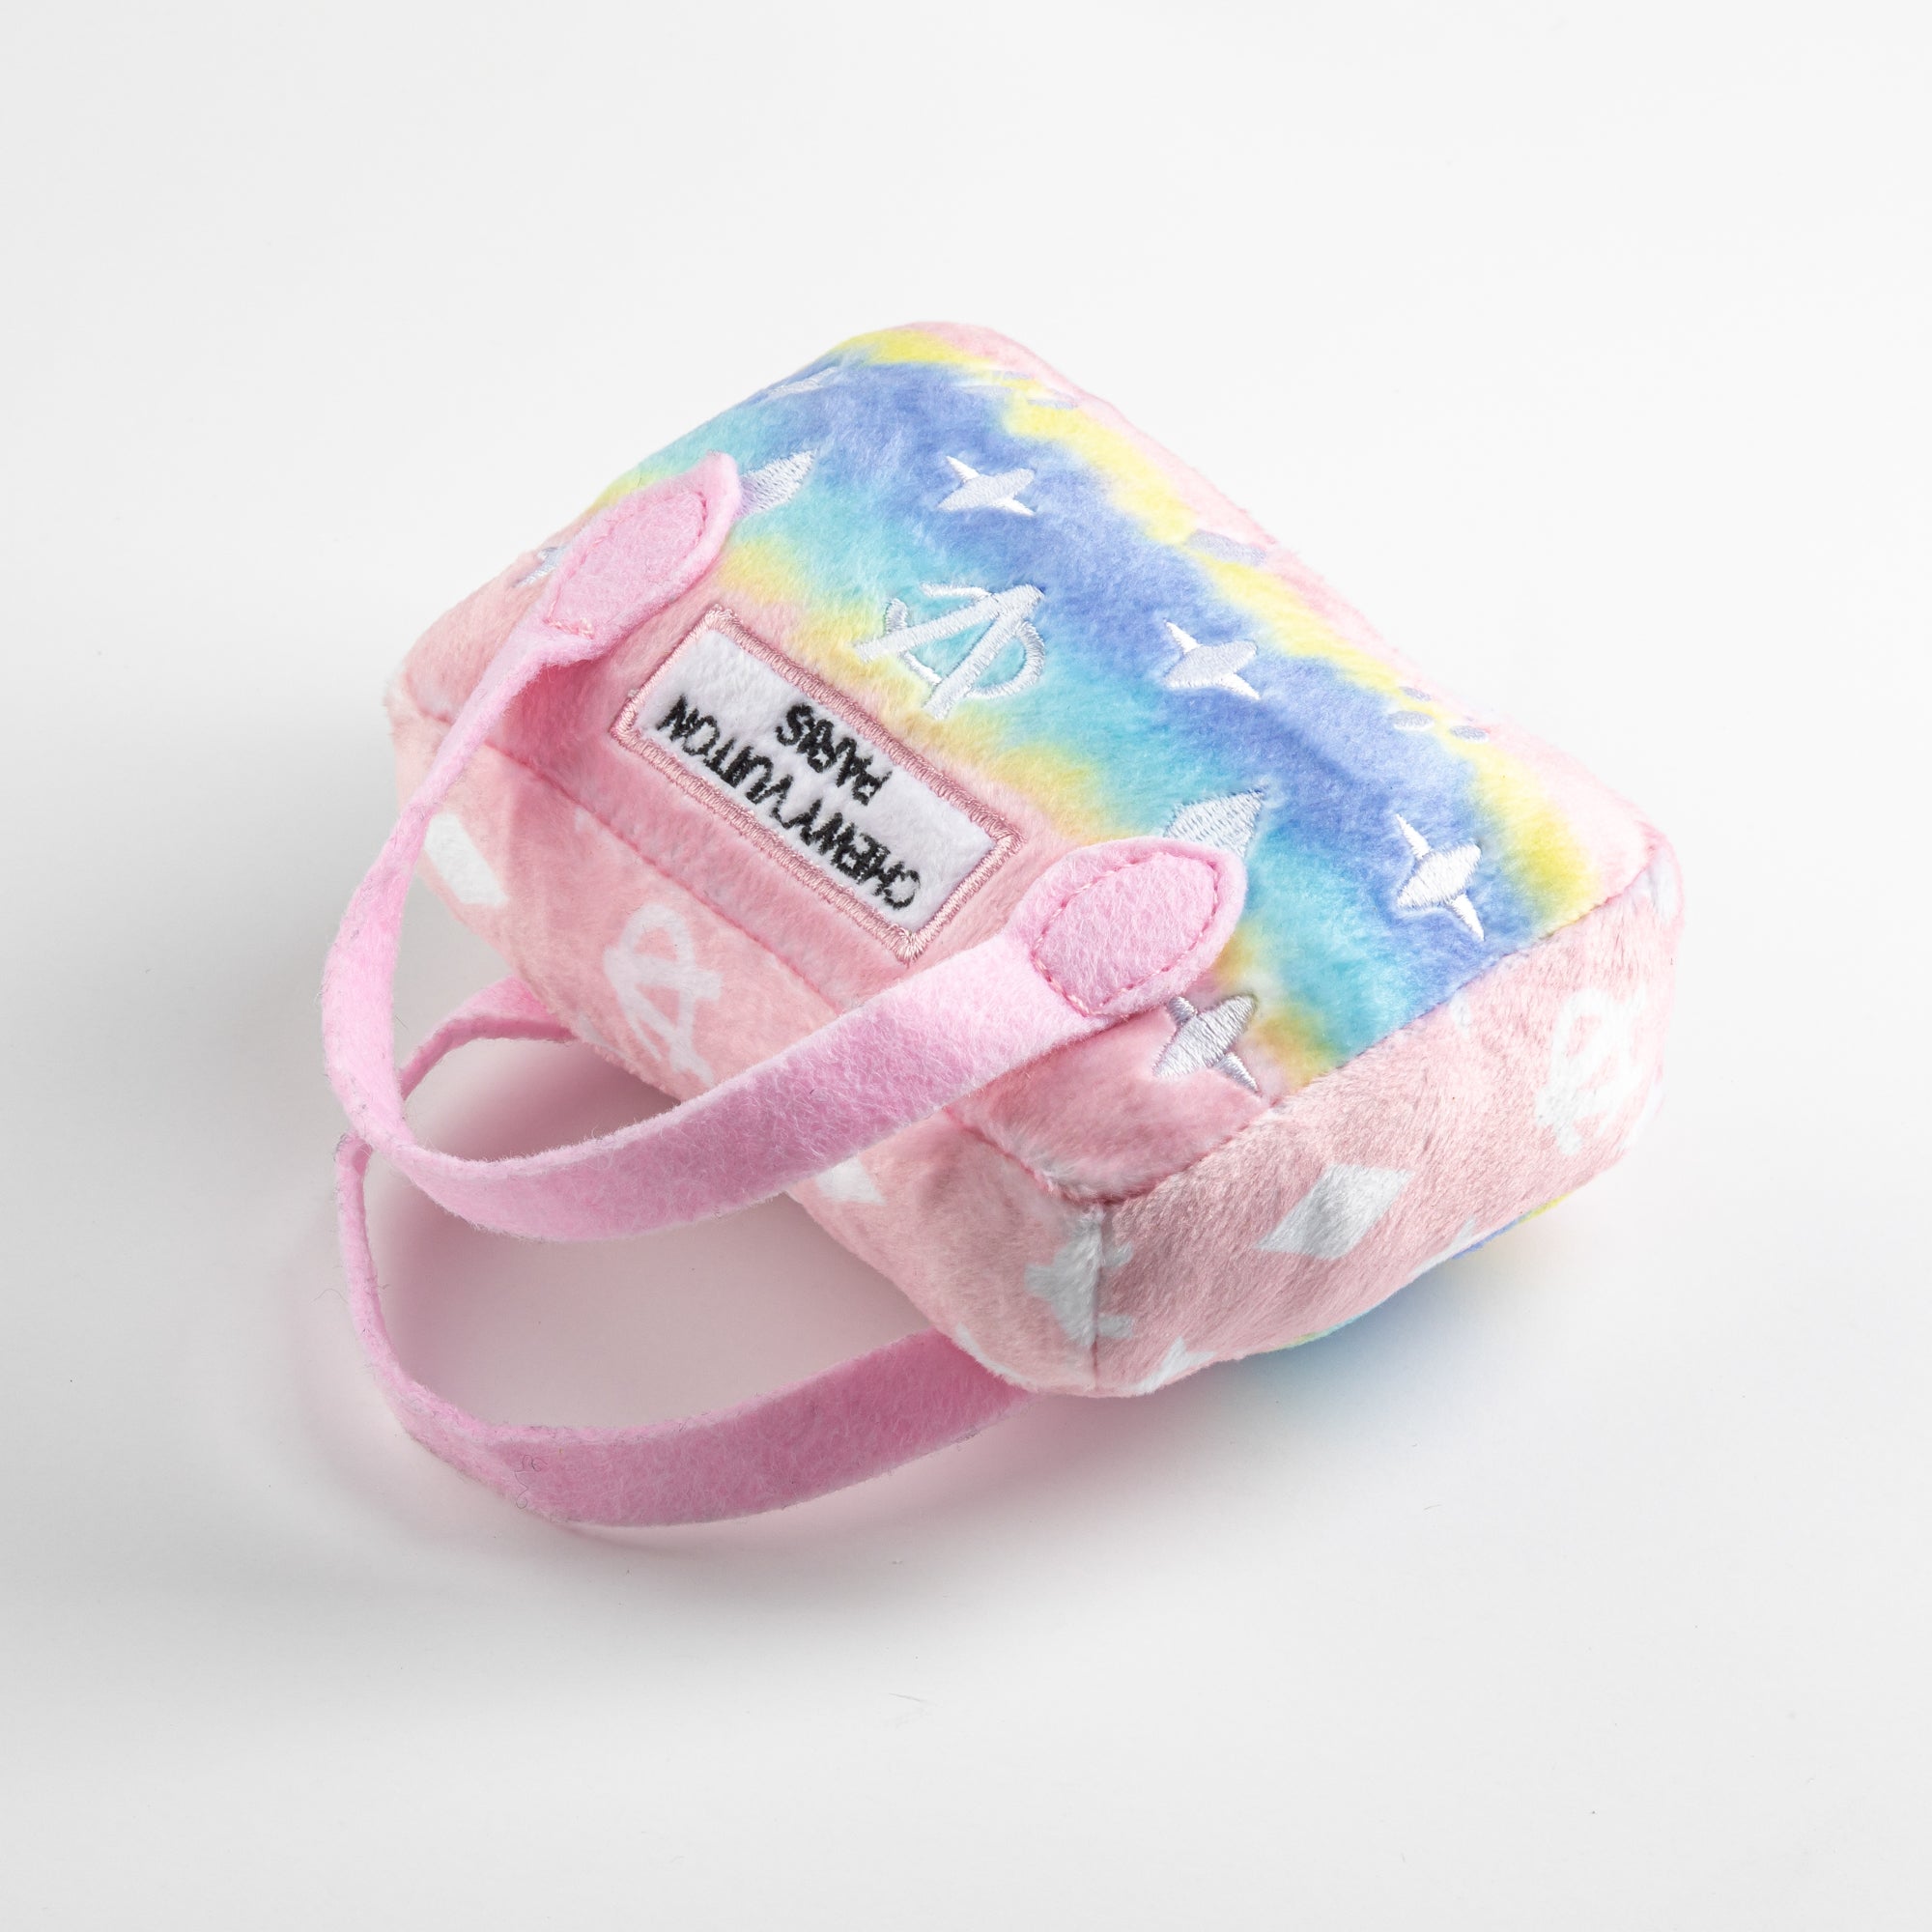 Pink Ombre Chewy Vuiton Handbag – Petit Pups Pawtique & More